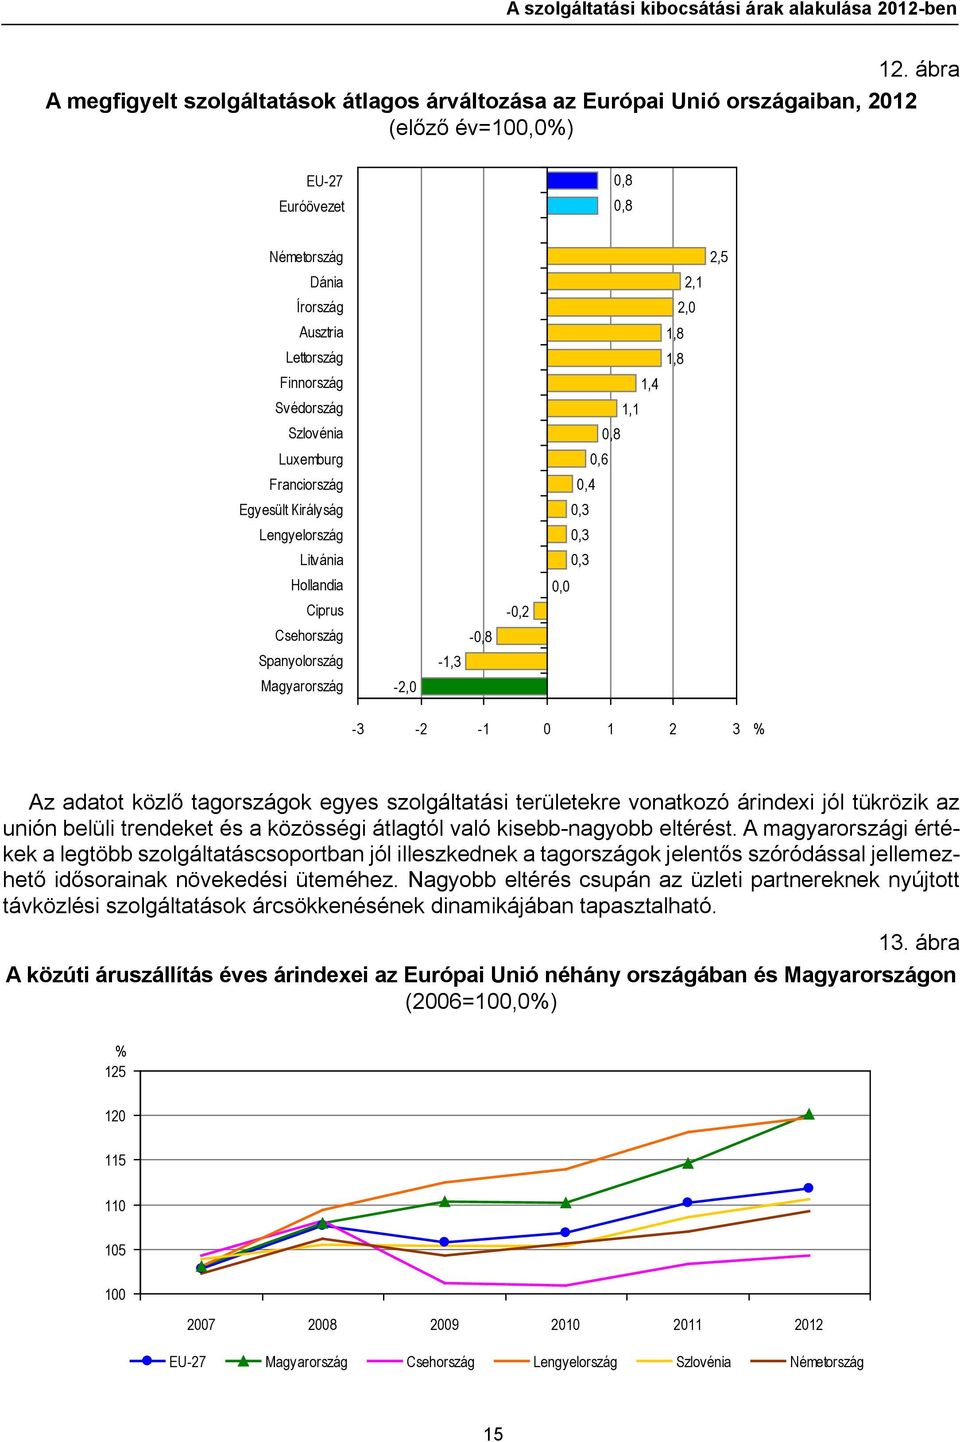 Csehország Spanyolország Magyarország -2,0-1,3-0,8-0,2 2,5 2,1 2,0 1,8 1,8 1,4 1,1 0,8 0,6 0,4 0,3 0,3 0,3 0,0-3 -2-1 0 1 2 3 % Az adatot közlő tagországok egyes i területekre vonatkozó árindexi jól